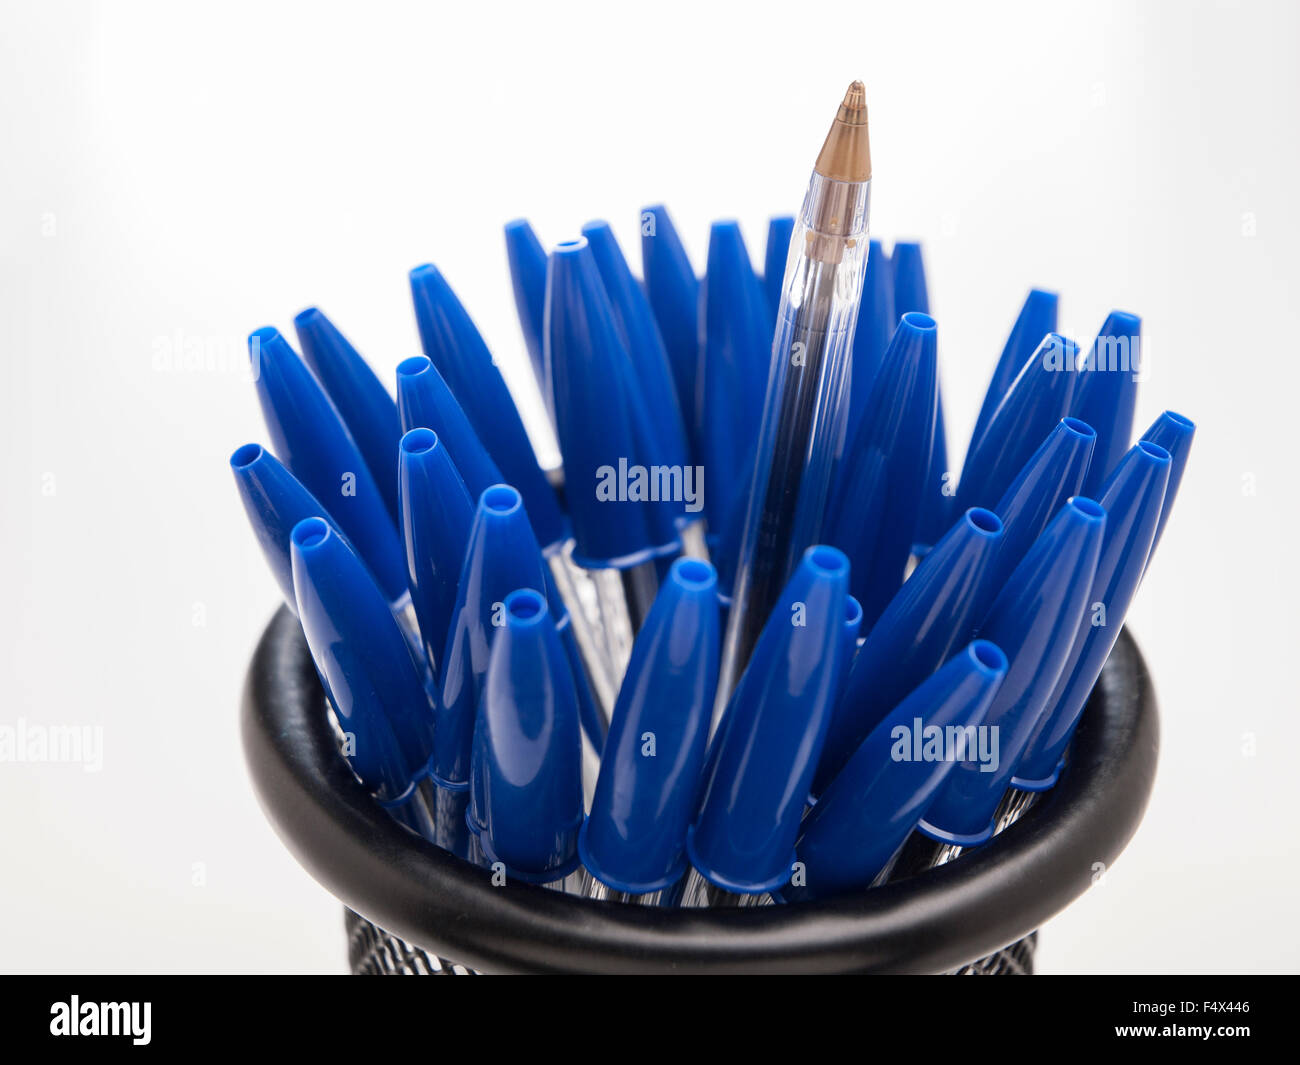 Bic cristal bleu plumes crayons Banque D'Images